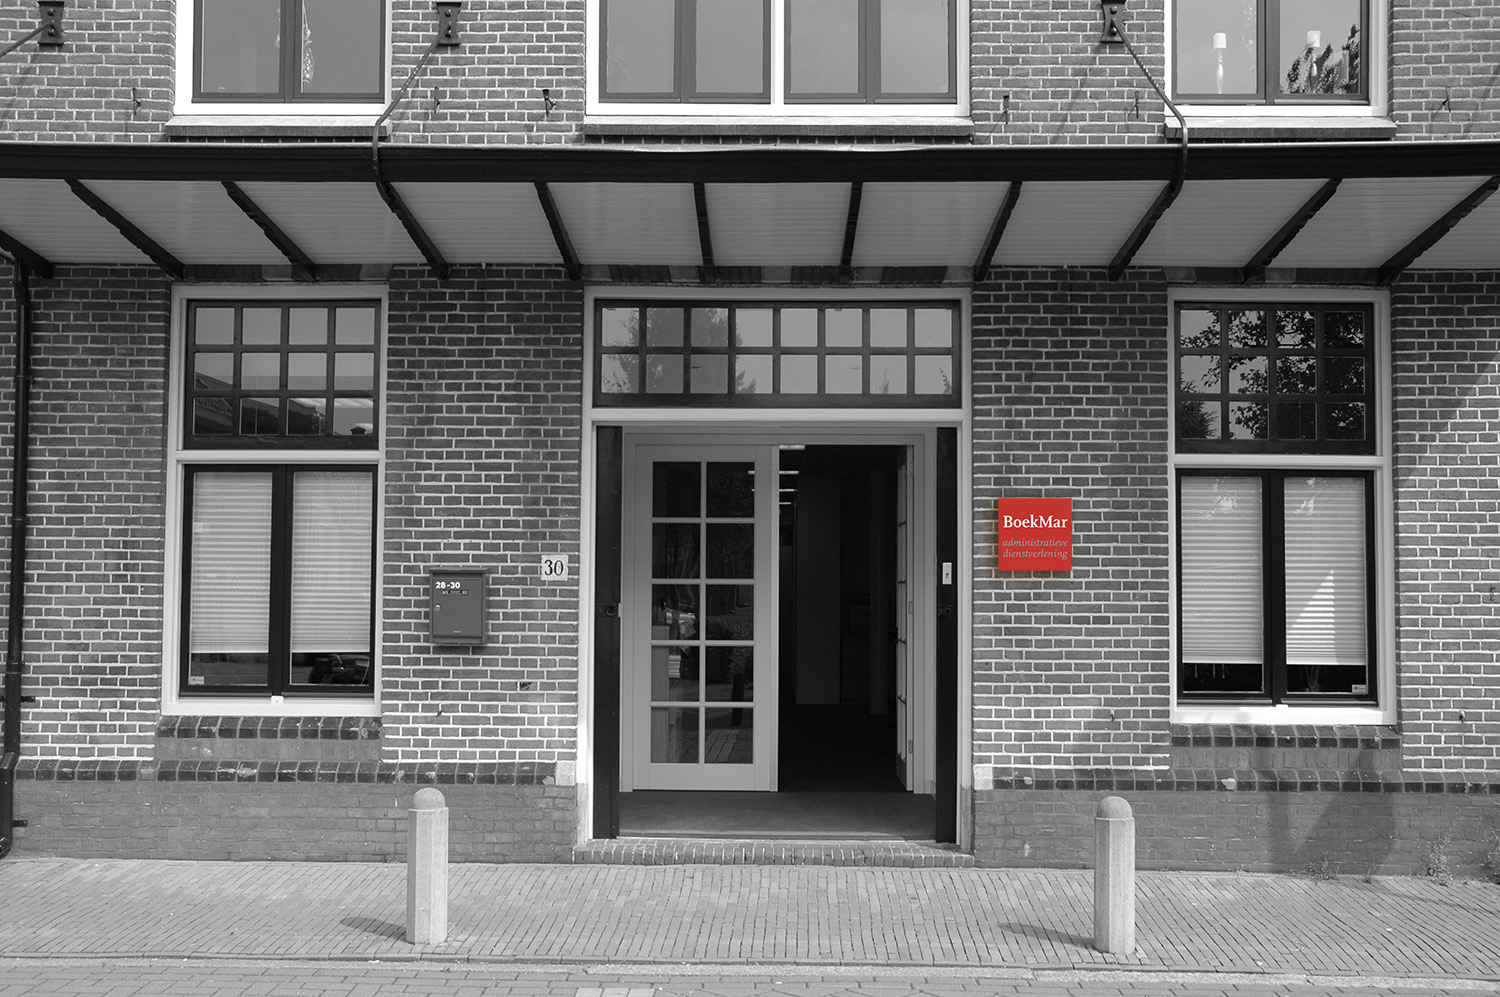 Administratiekantoor BoekMar is gevestigd in een karakteristiek pand in het centrum van Bodegraven